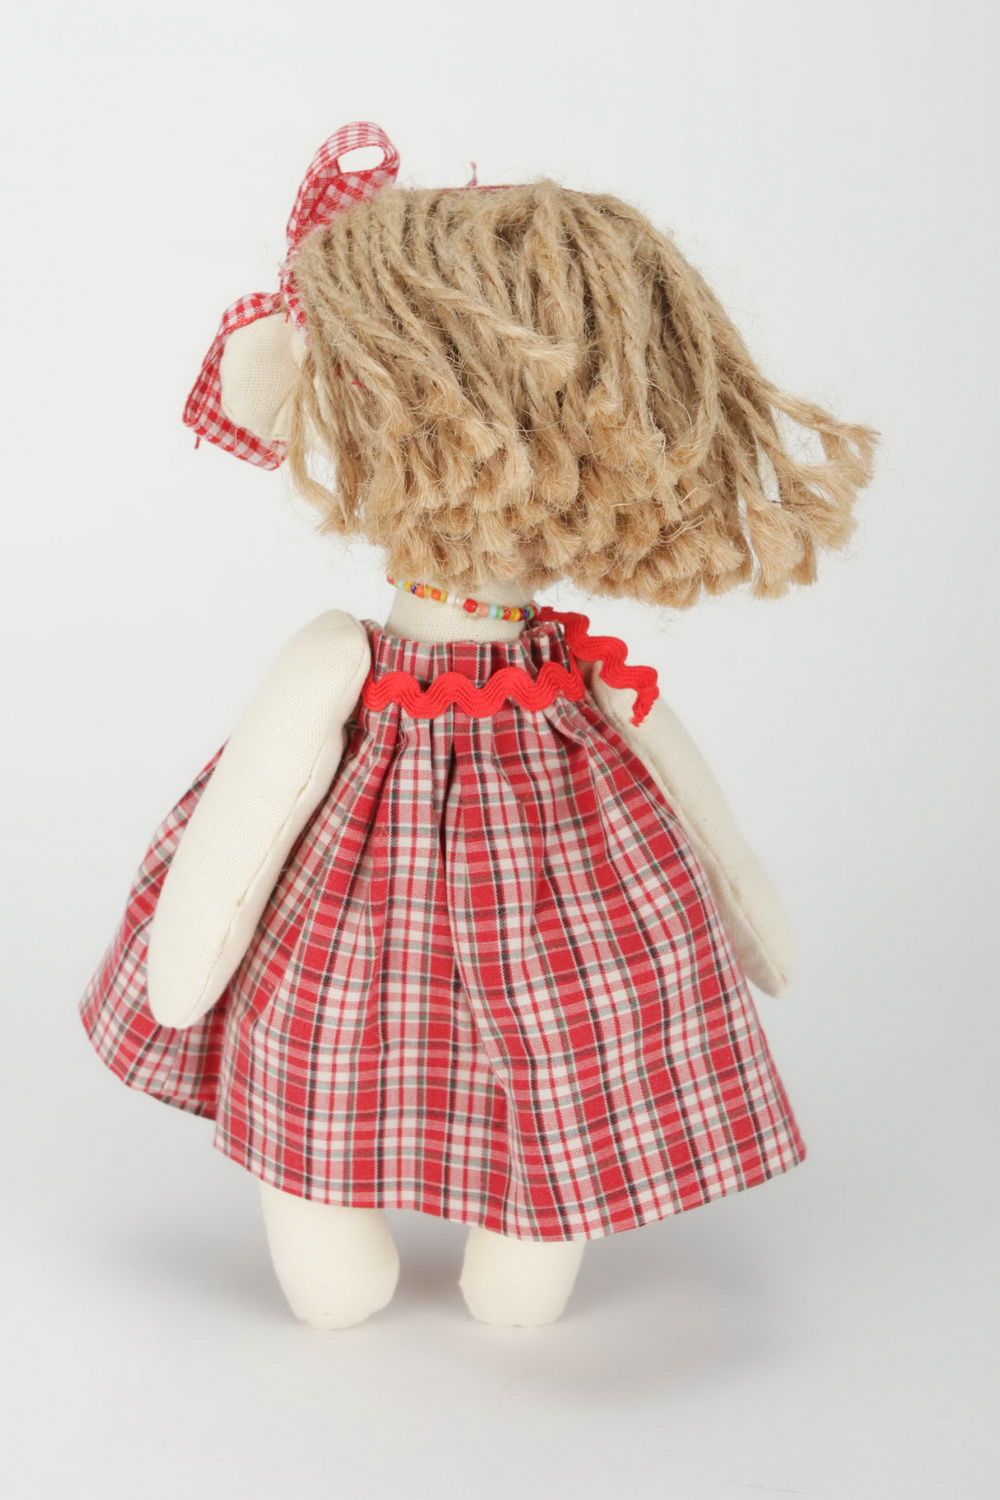 Stoff-Puppe Mädchen im Kleiderrock foto 4